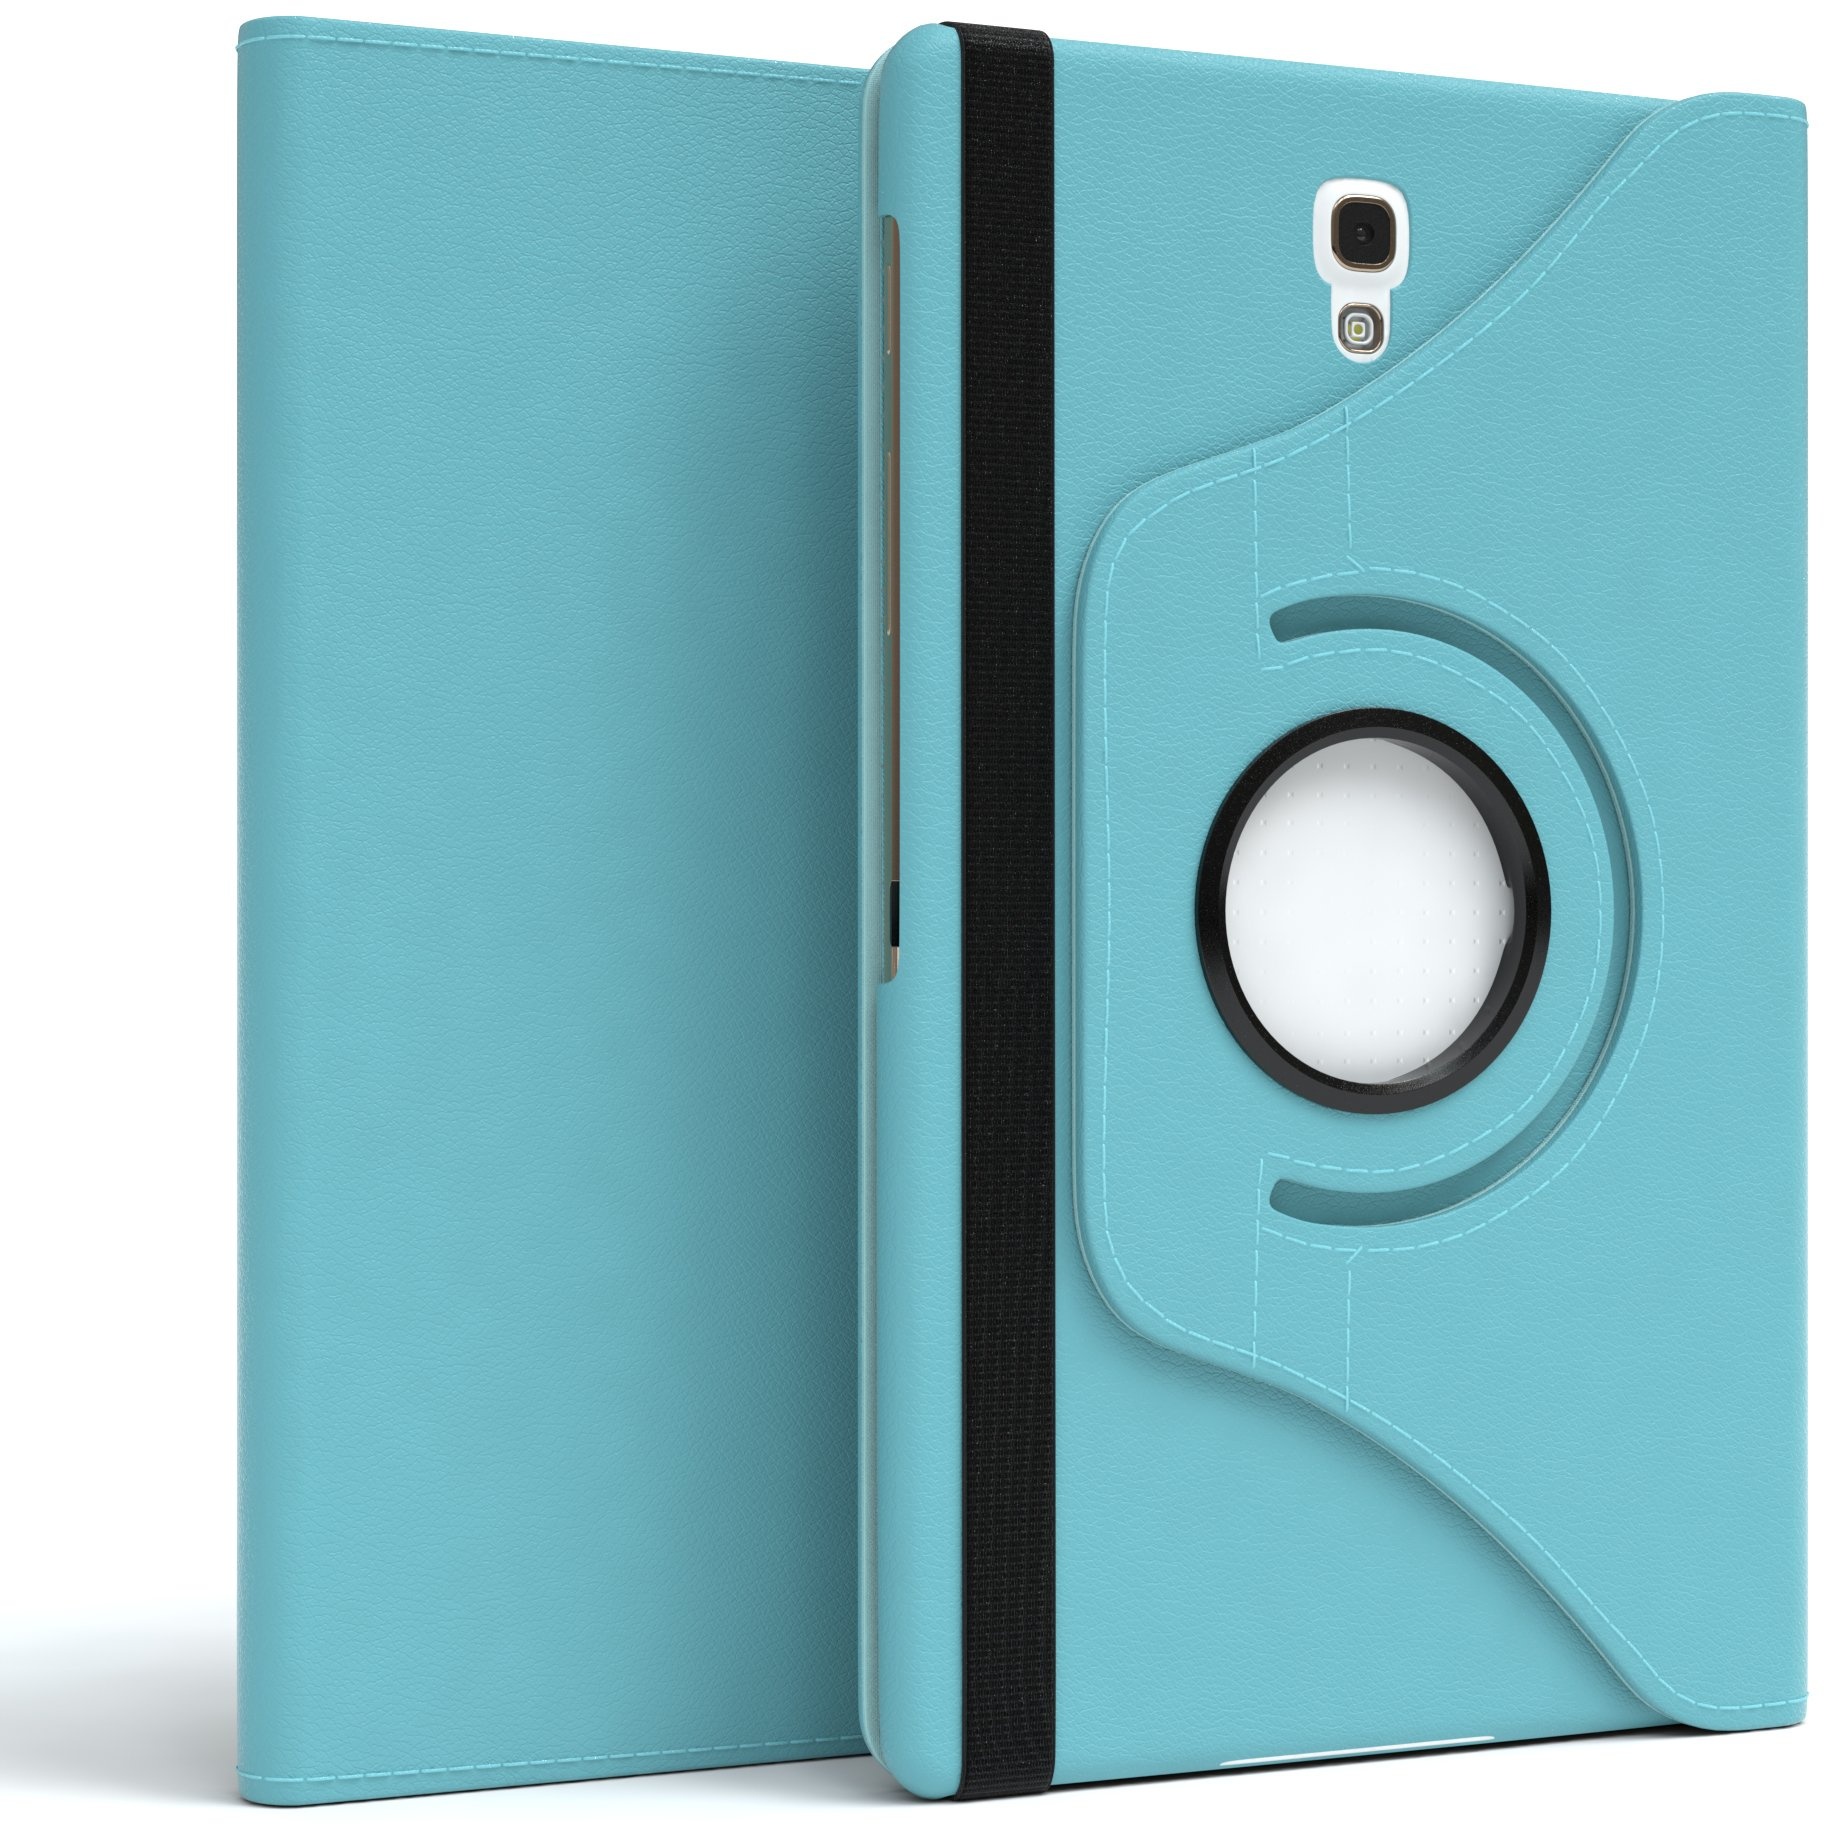 EAZY CASE - Tablet Hülle für Samsung Galaxy Tab S 8.4 Schutzhülle 8.4 Zoll Smart Cover Tablet Case Rotationcase zum Aufstellen Klapphülle 360° drehbar mit Standfunktion Tasche Kunstleder Blau